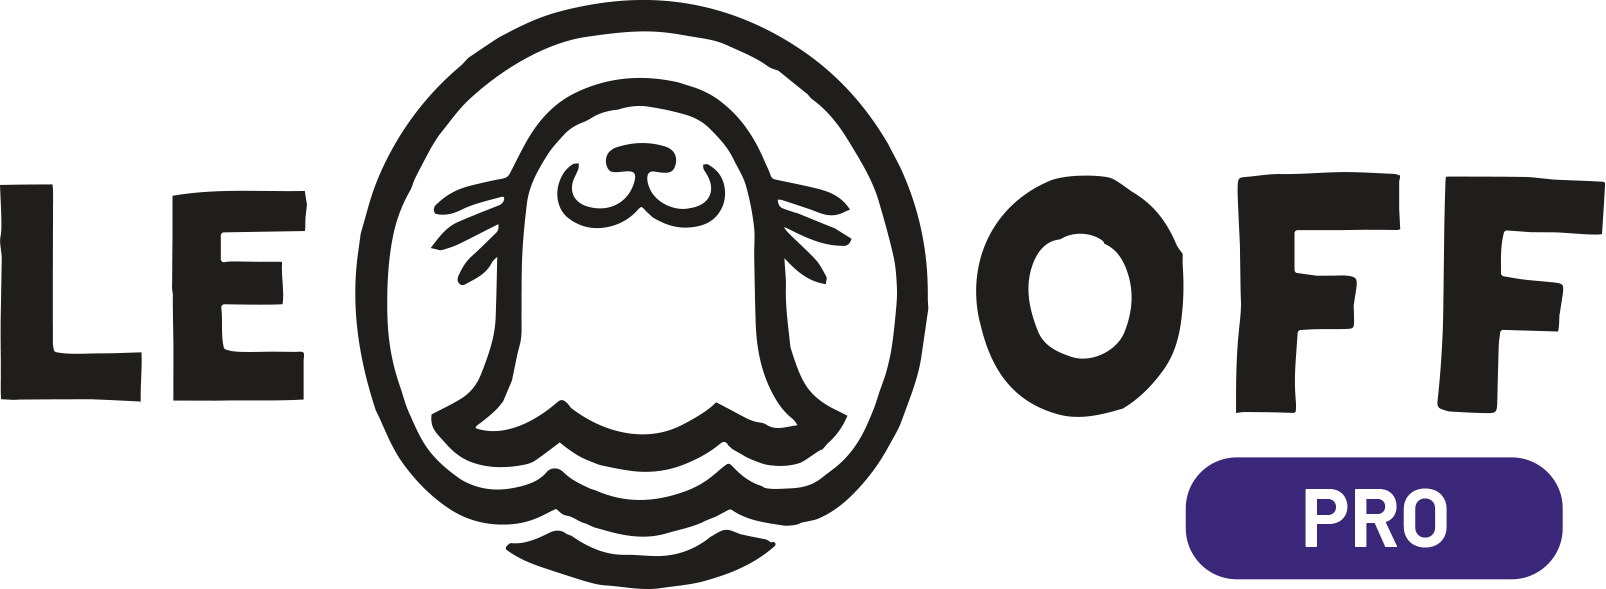 Logo Phoque OFF PRO